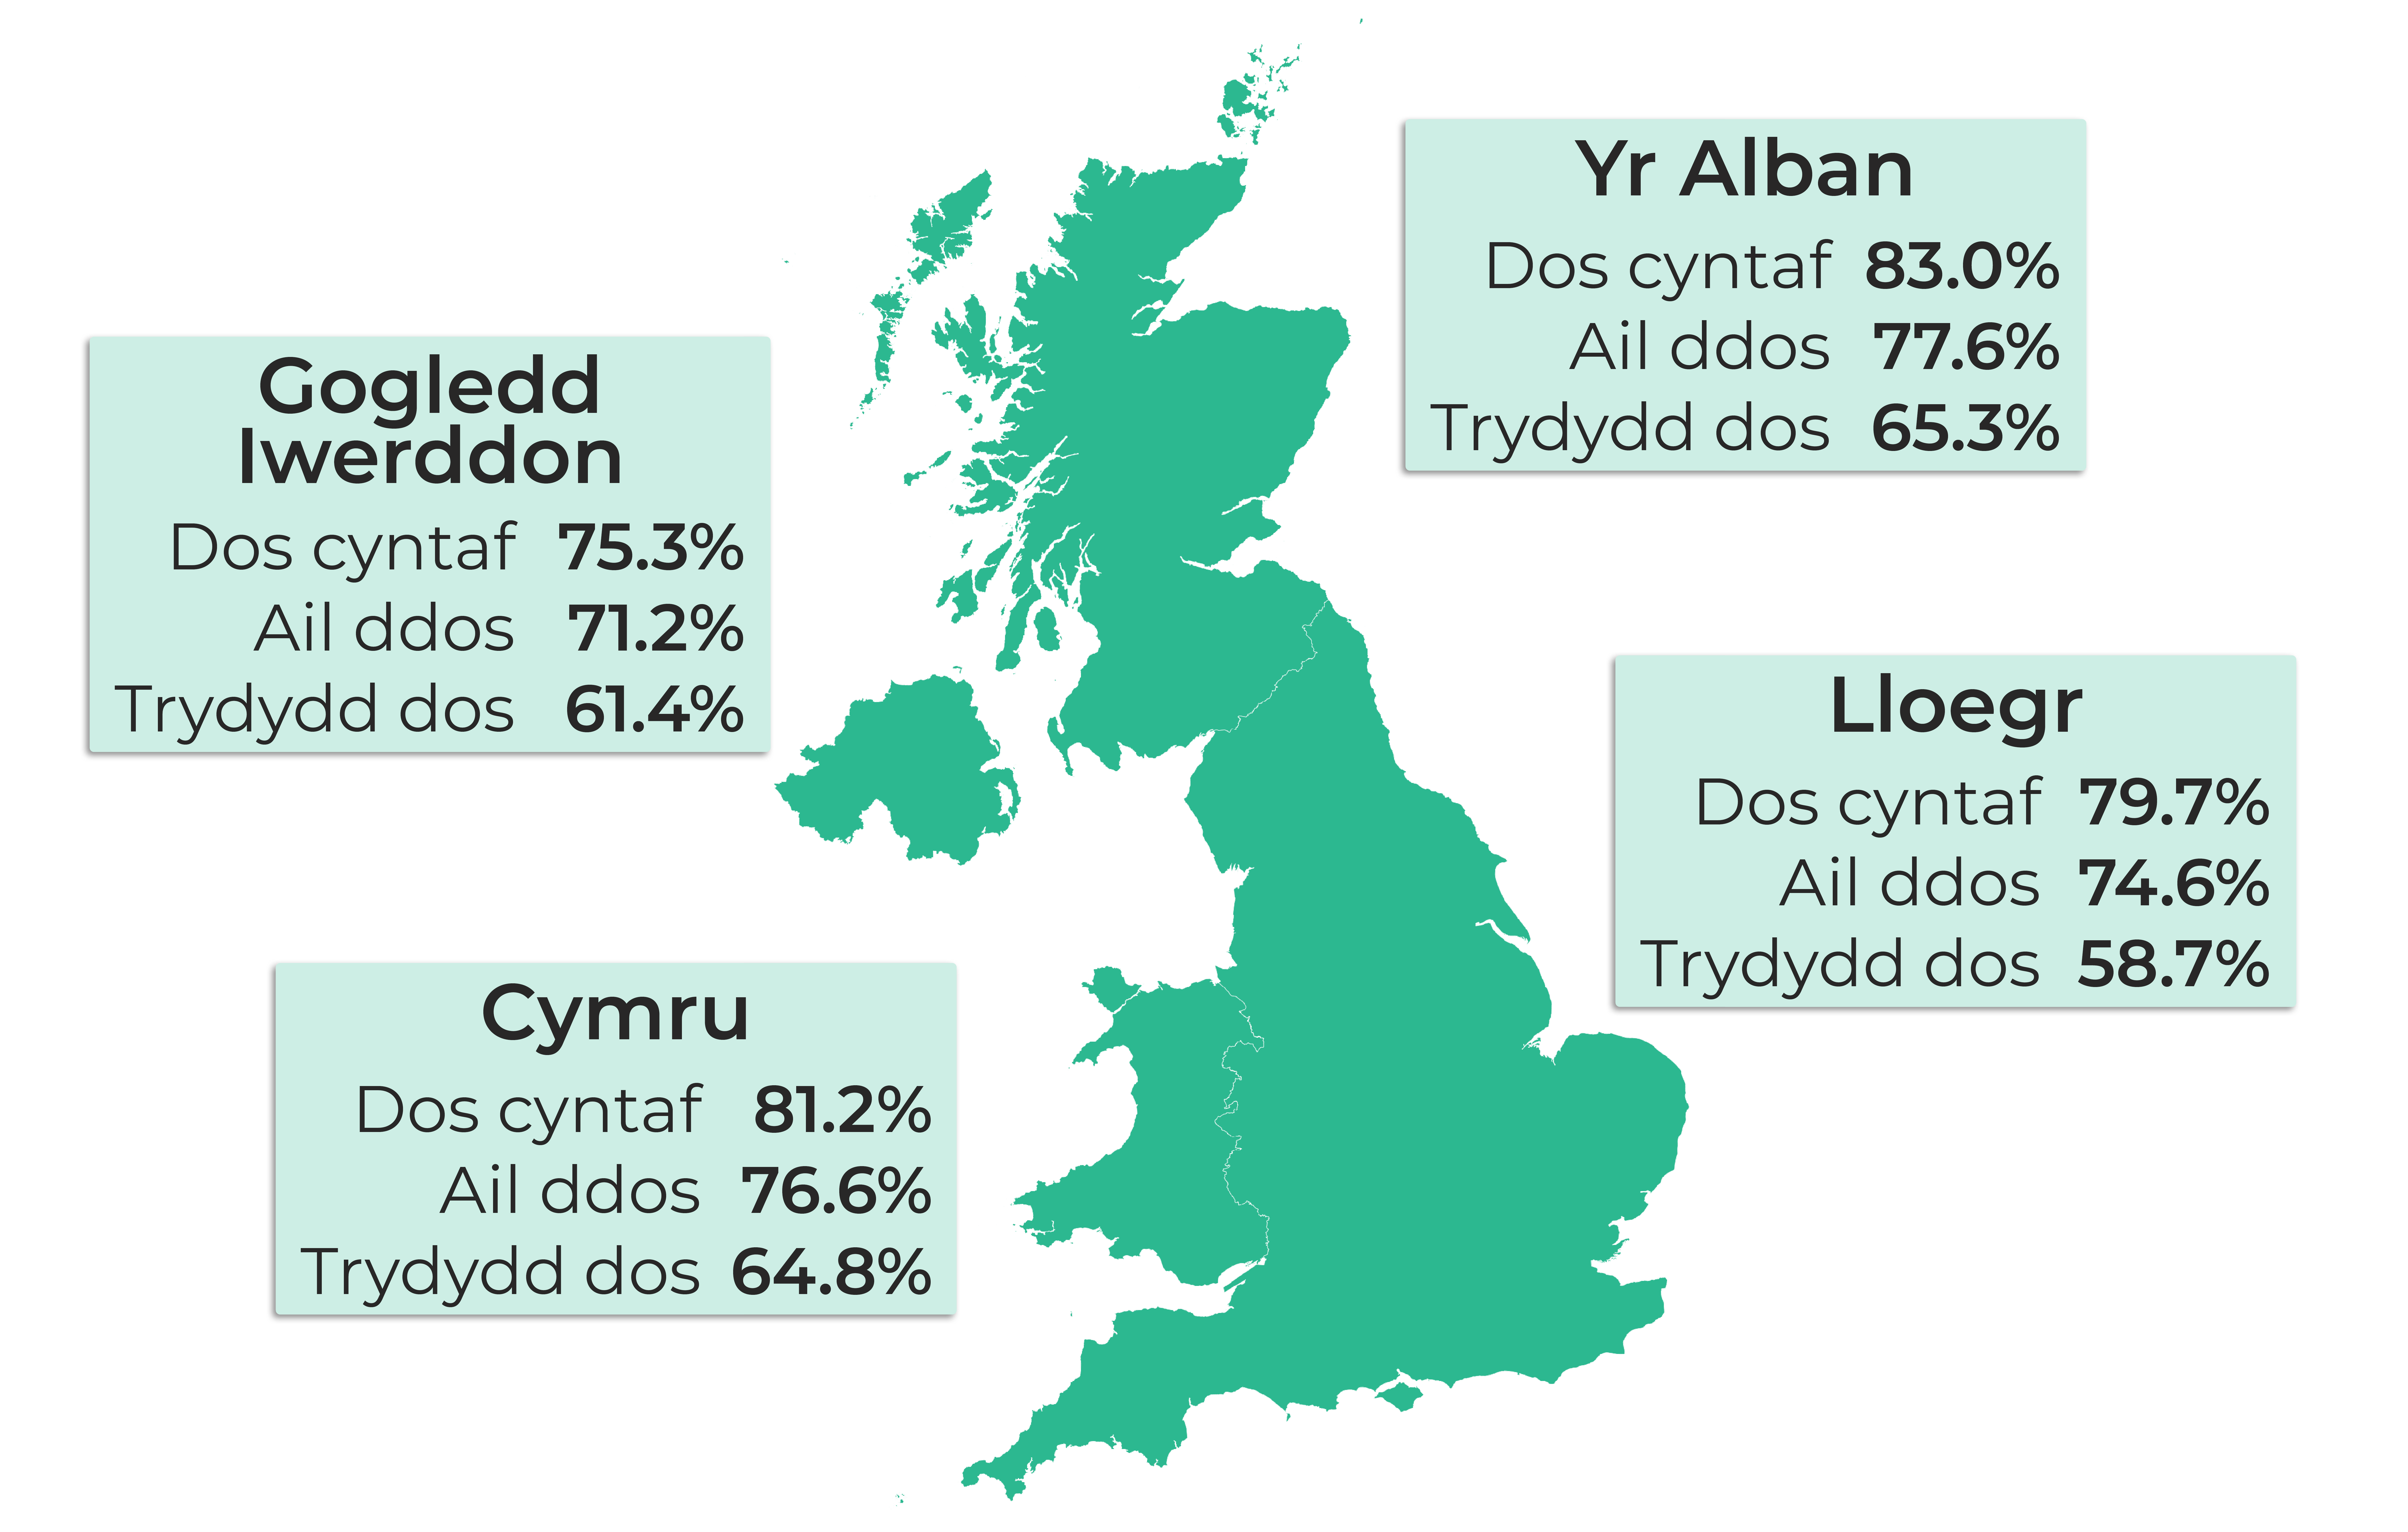 Map o'r DU yn dangos: Dos cyntaf Cymru, 81.2%. Ail ddos Cymru, 76.6%. Trydydd dos Cymru, 64.8%. Dos cyntaf Lloegr, 79.7%. Ail ddos Lloegr, 74.6%. Trydydd dos Lloegr, 58.7%. Dos cyntaf Yr Alban, 83%. Ail ddos Yr Alban, 77.6%. Trydydd dos Yr Alban, 65.3%. Dos cyntaf Gogledd Iwerddon, 75.3%. Ail ddos Gogledd Iwerddon, 71.2%. Trydydd dos Gogledd Iwerddon, 61.4%.